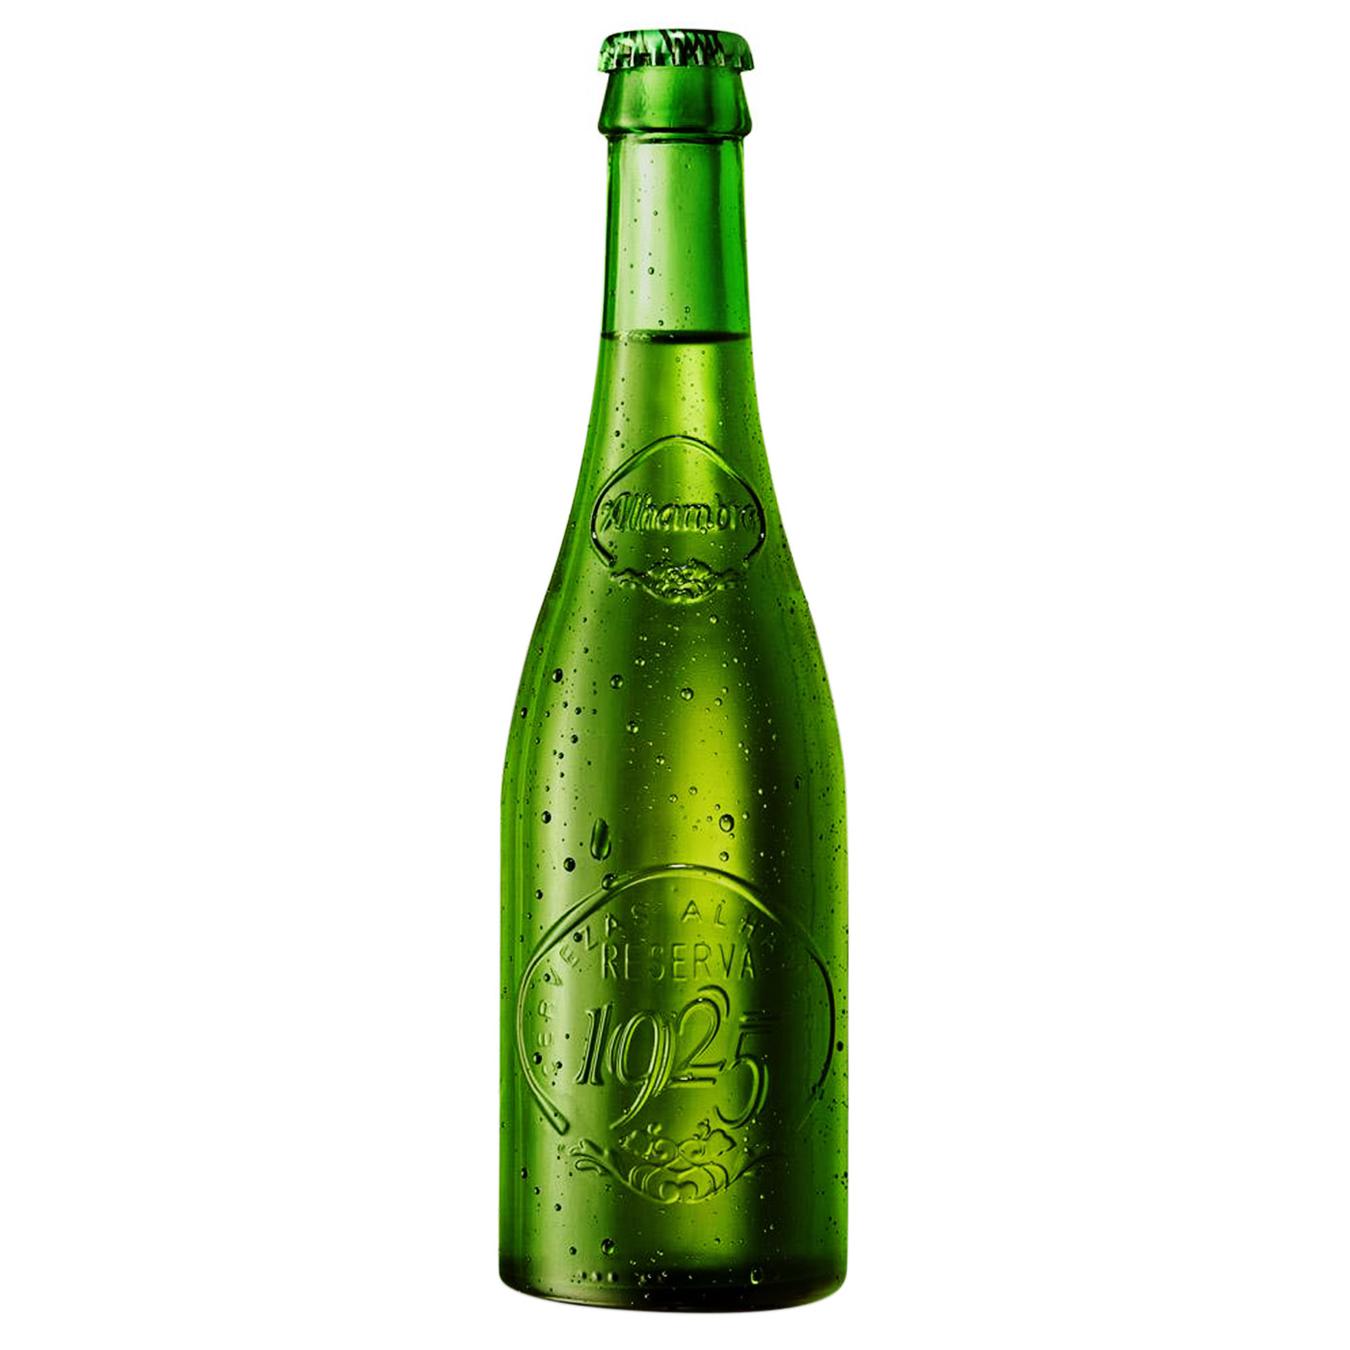 Пиво світле Alhambra Reserva 1925 6,4% 0,33л скло